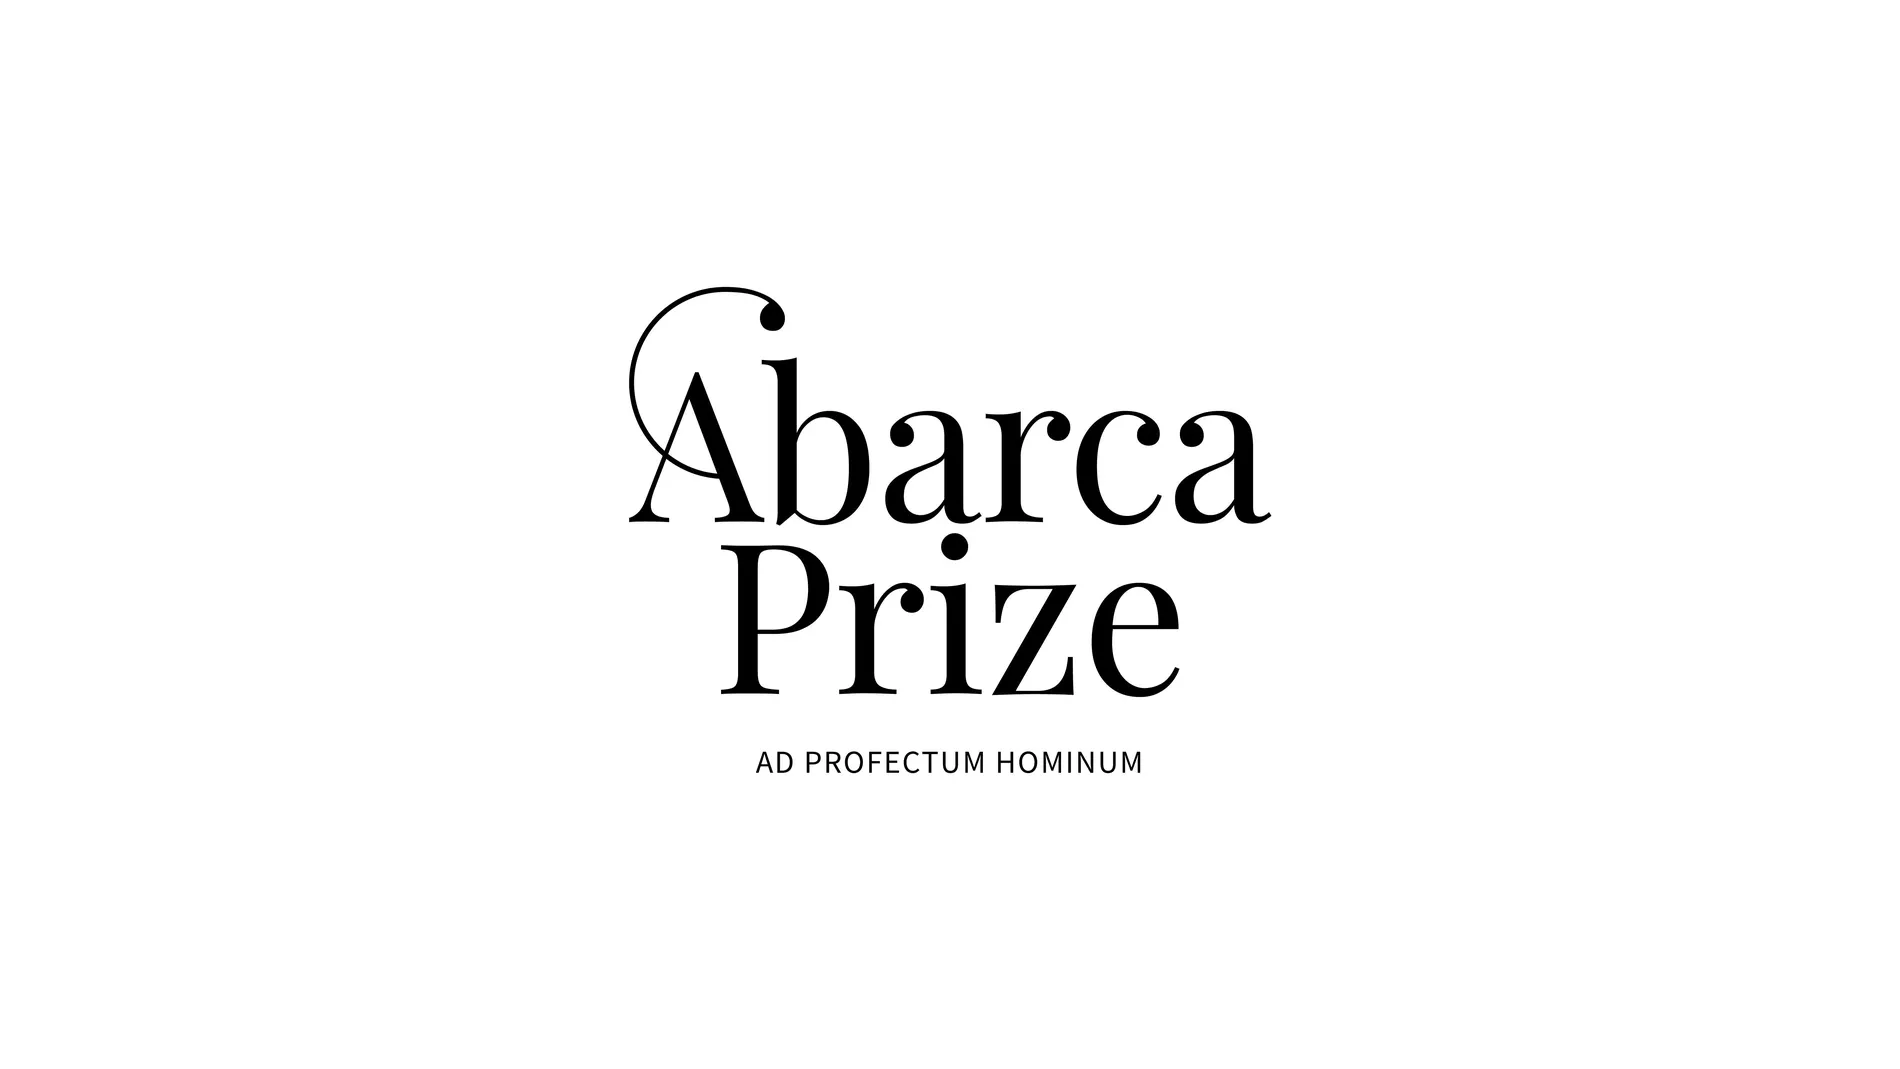 Nace el premio Abarca Prize impulsado por HM Hospitales